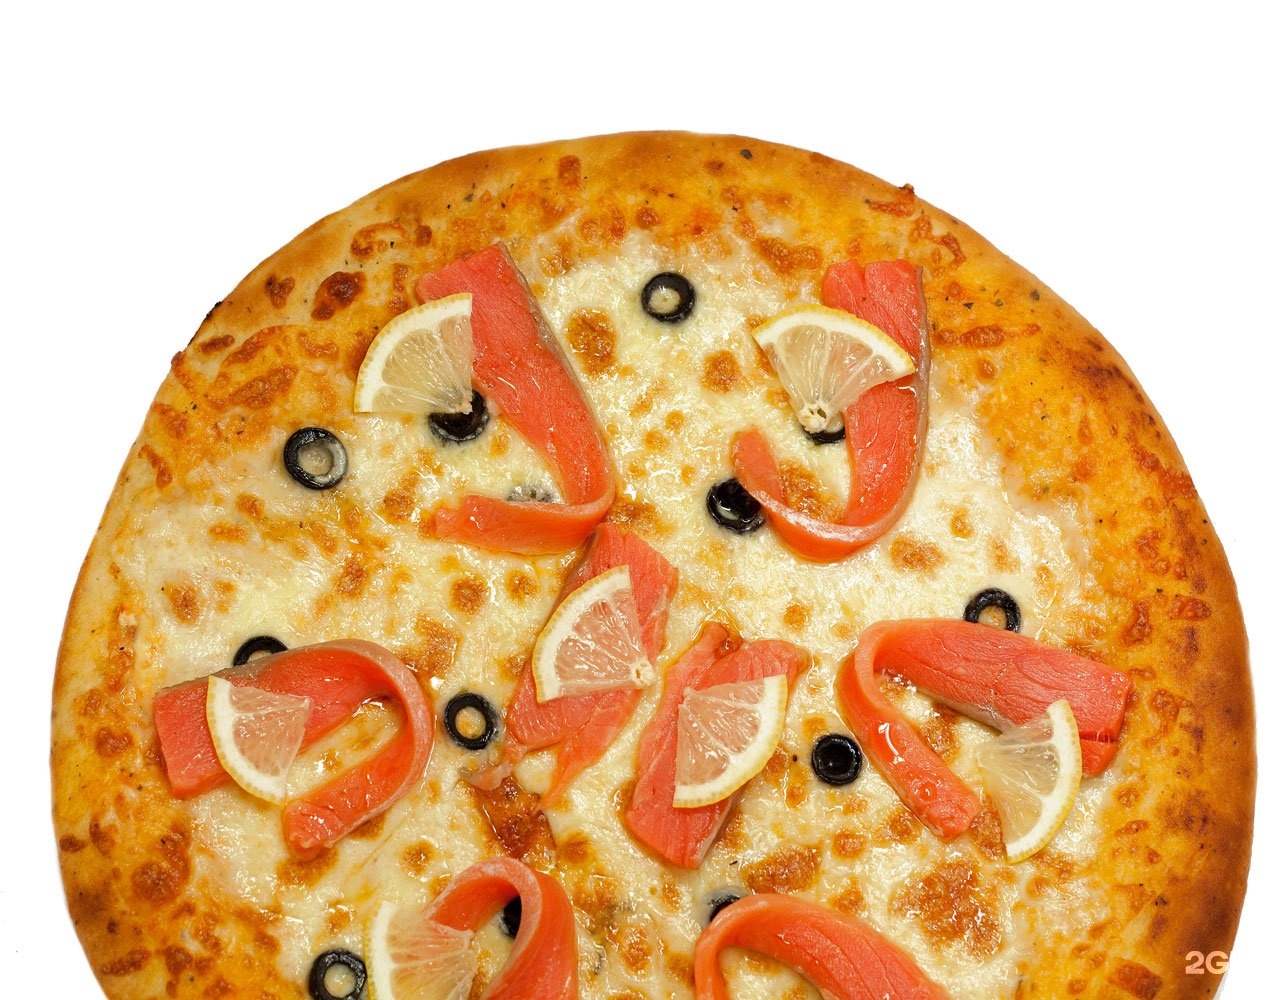 Hot pizza. Хот пицца Краснодар Толбухина. Пицца со слабосоленой семгой. Пицца с красной рыбой. Пицца персонаж.